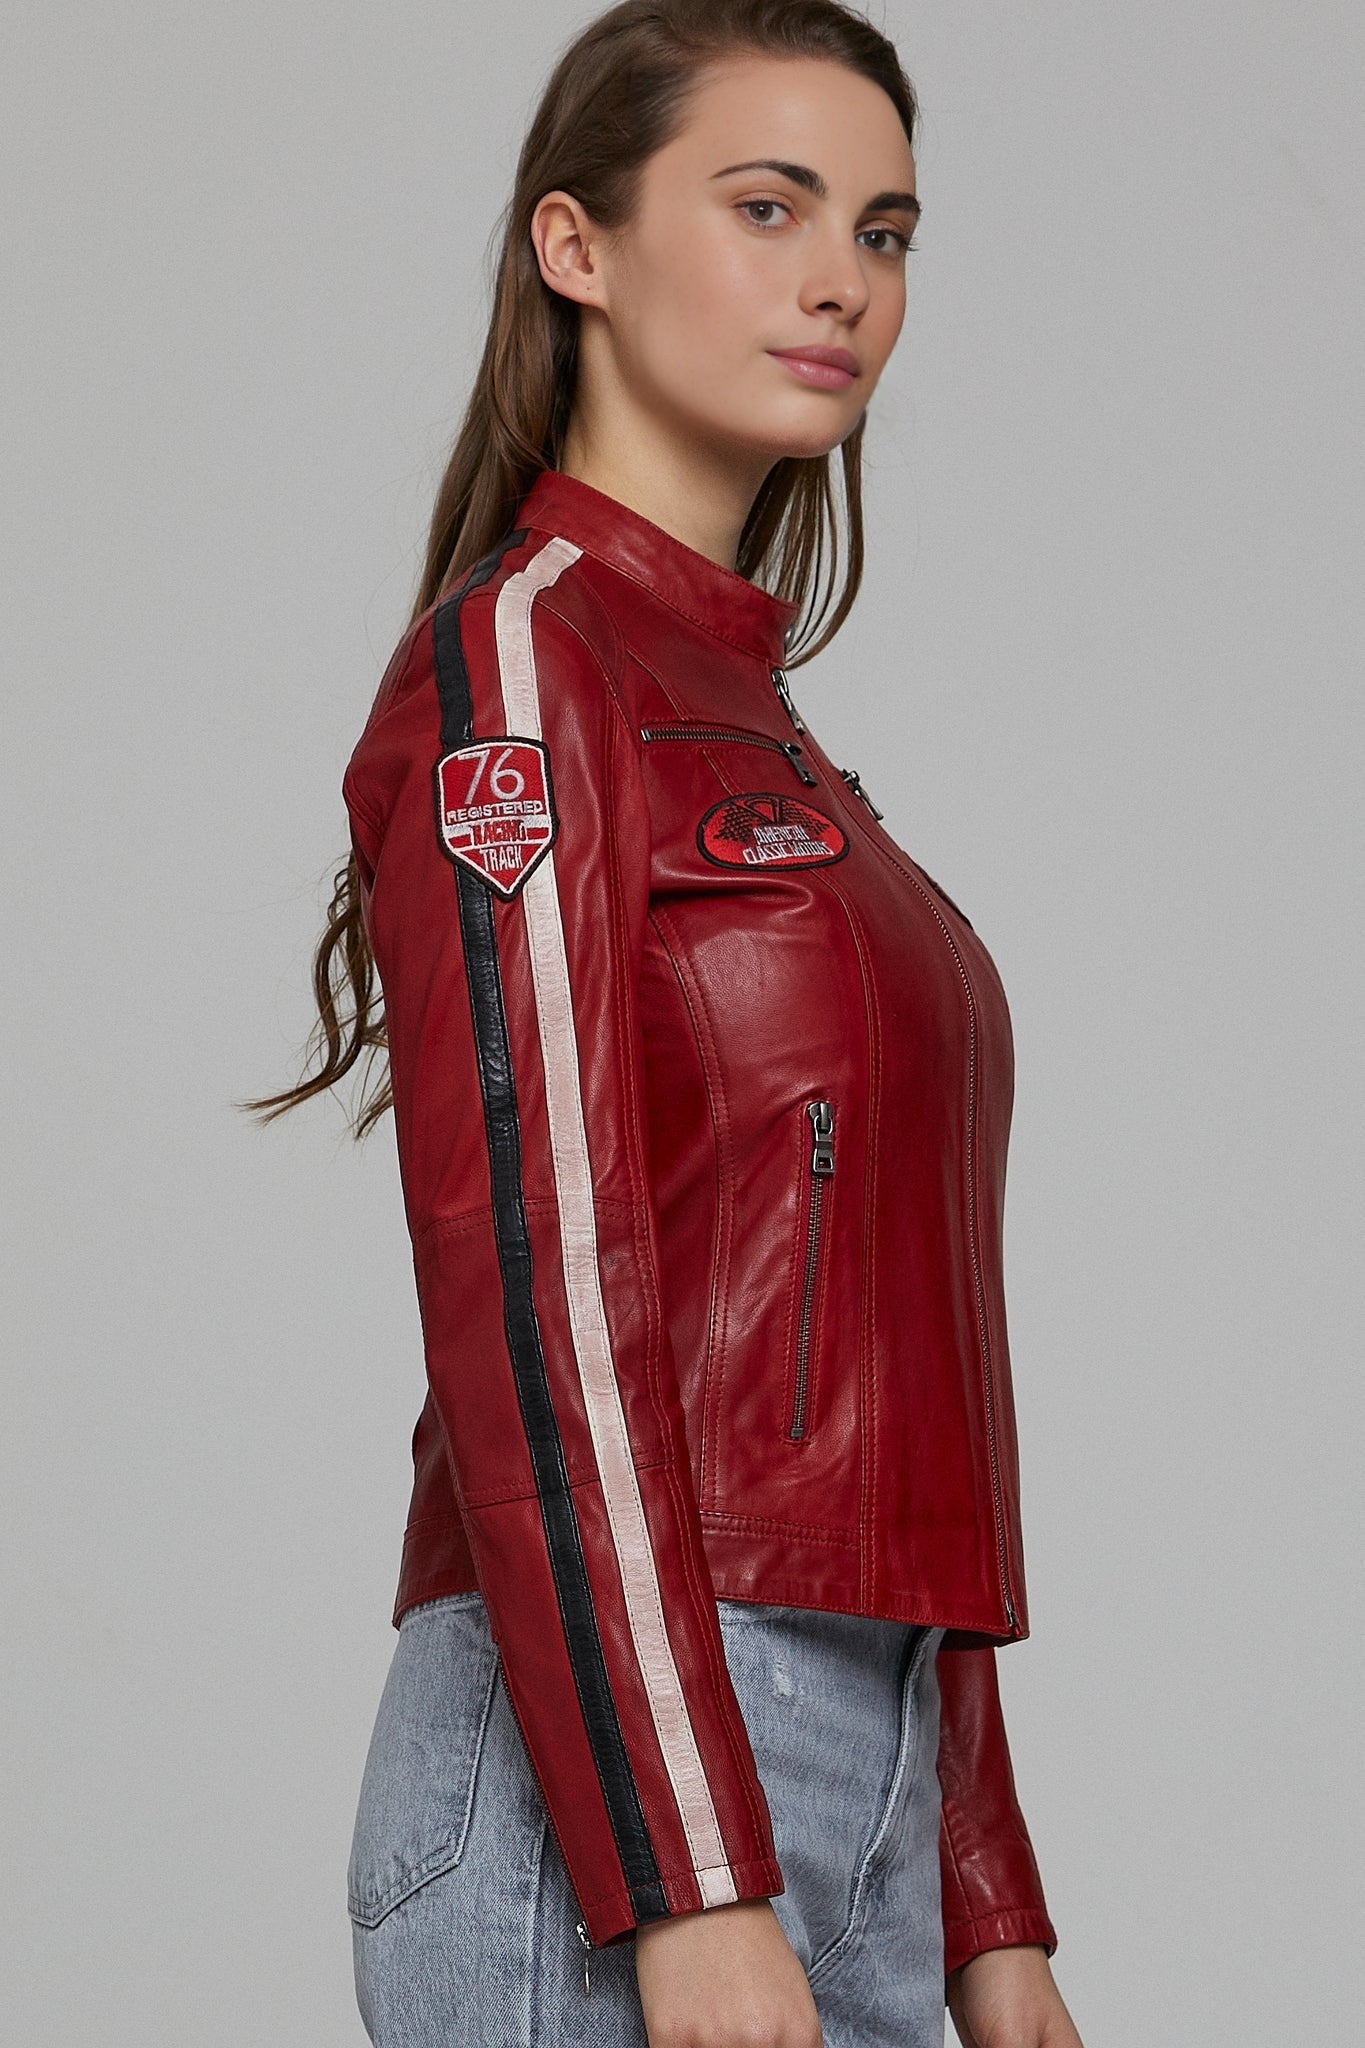 Ladyracer Women's Red Biker Leather Jacket